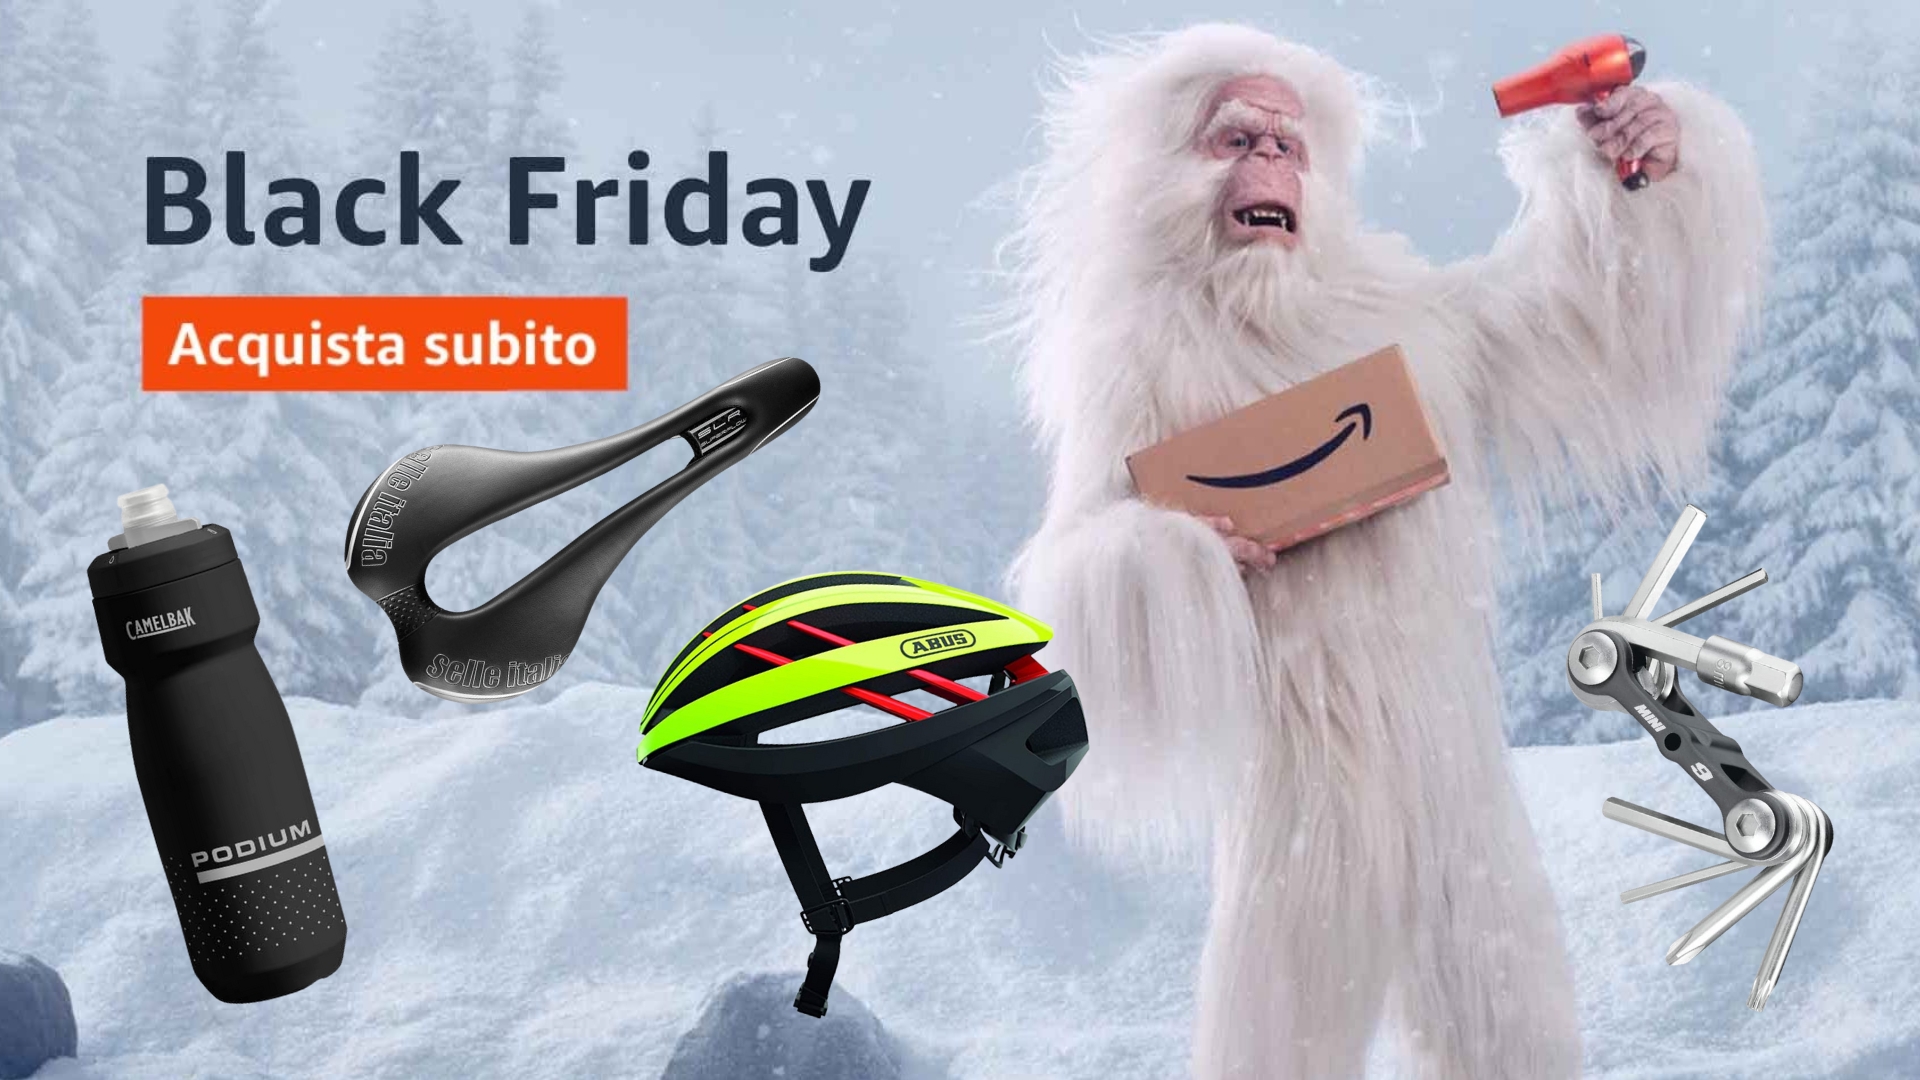 Tutte le offerte ciclismo Amazon Black Friday…